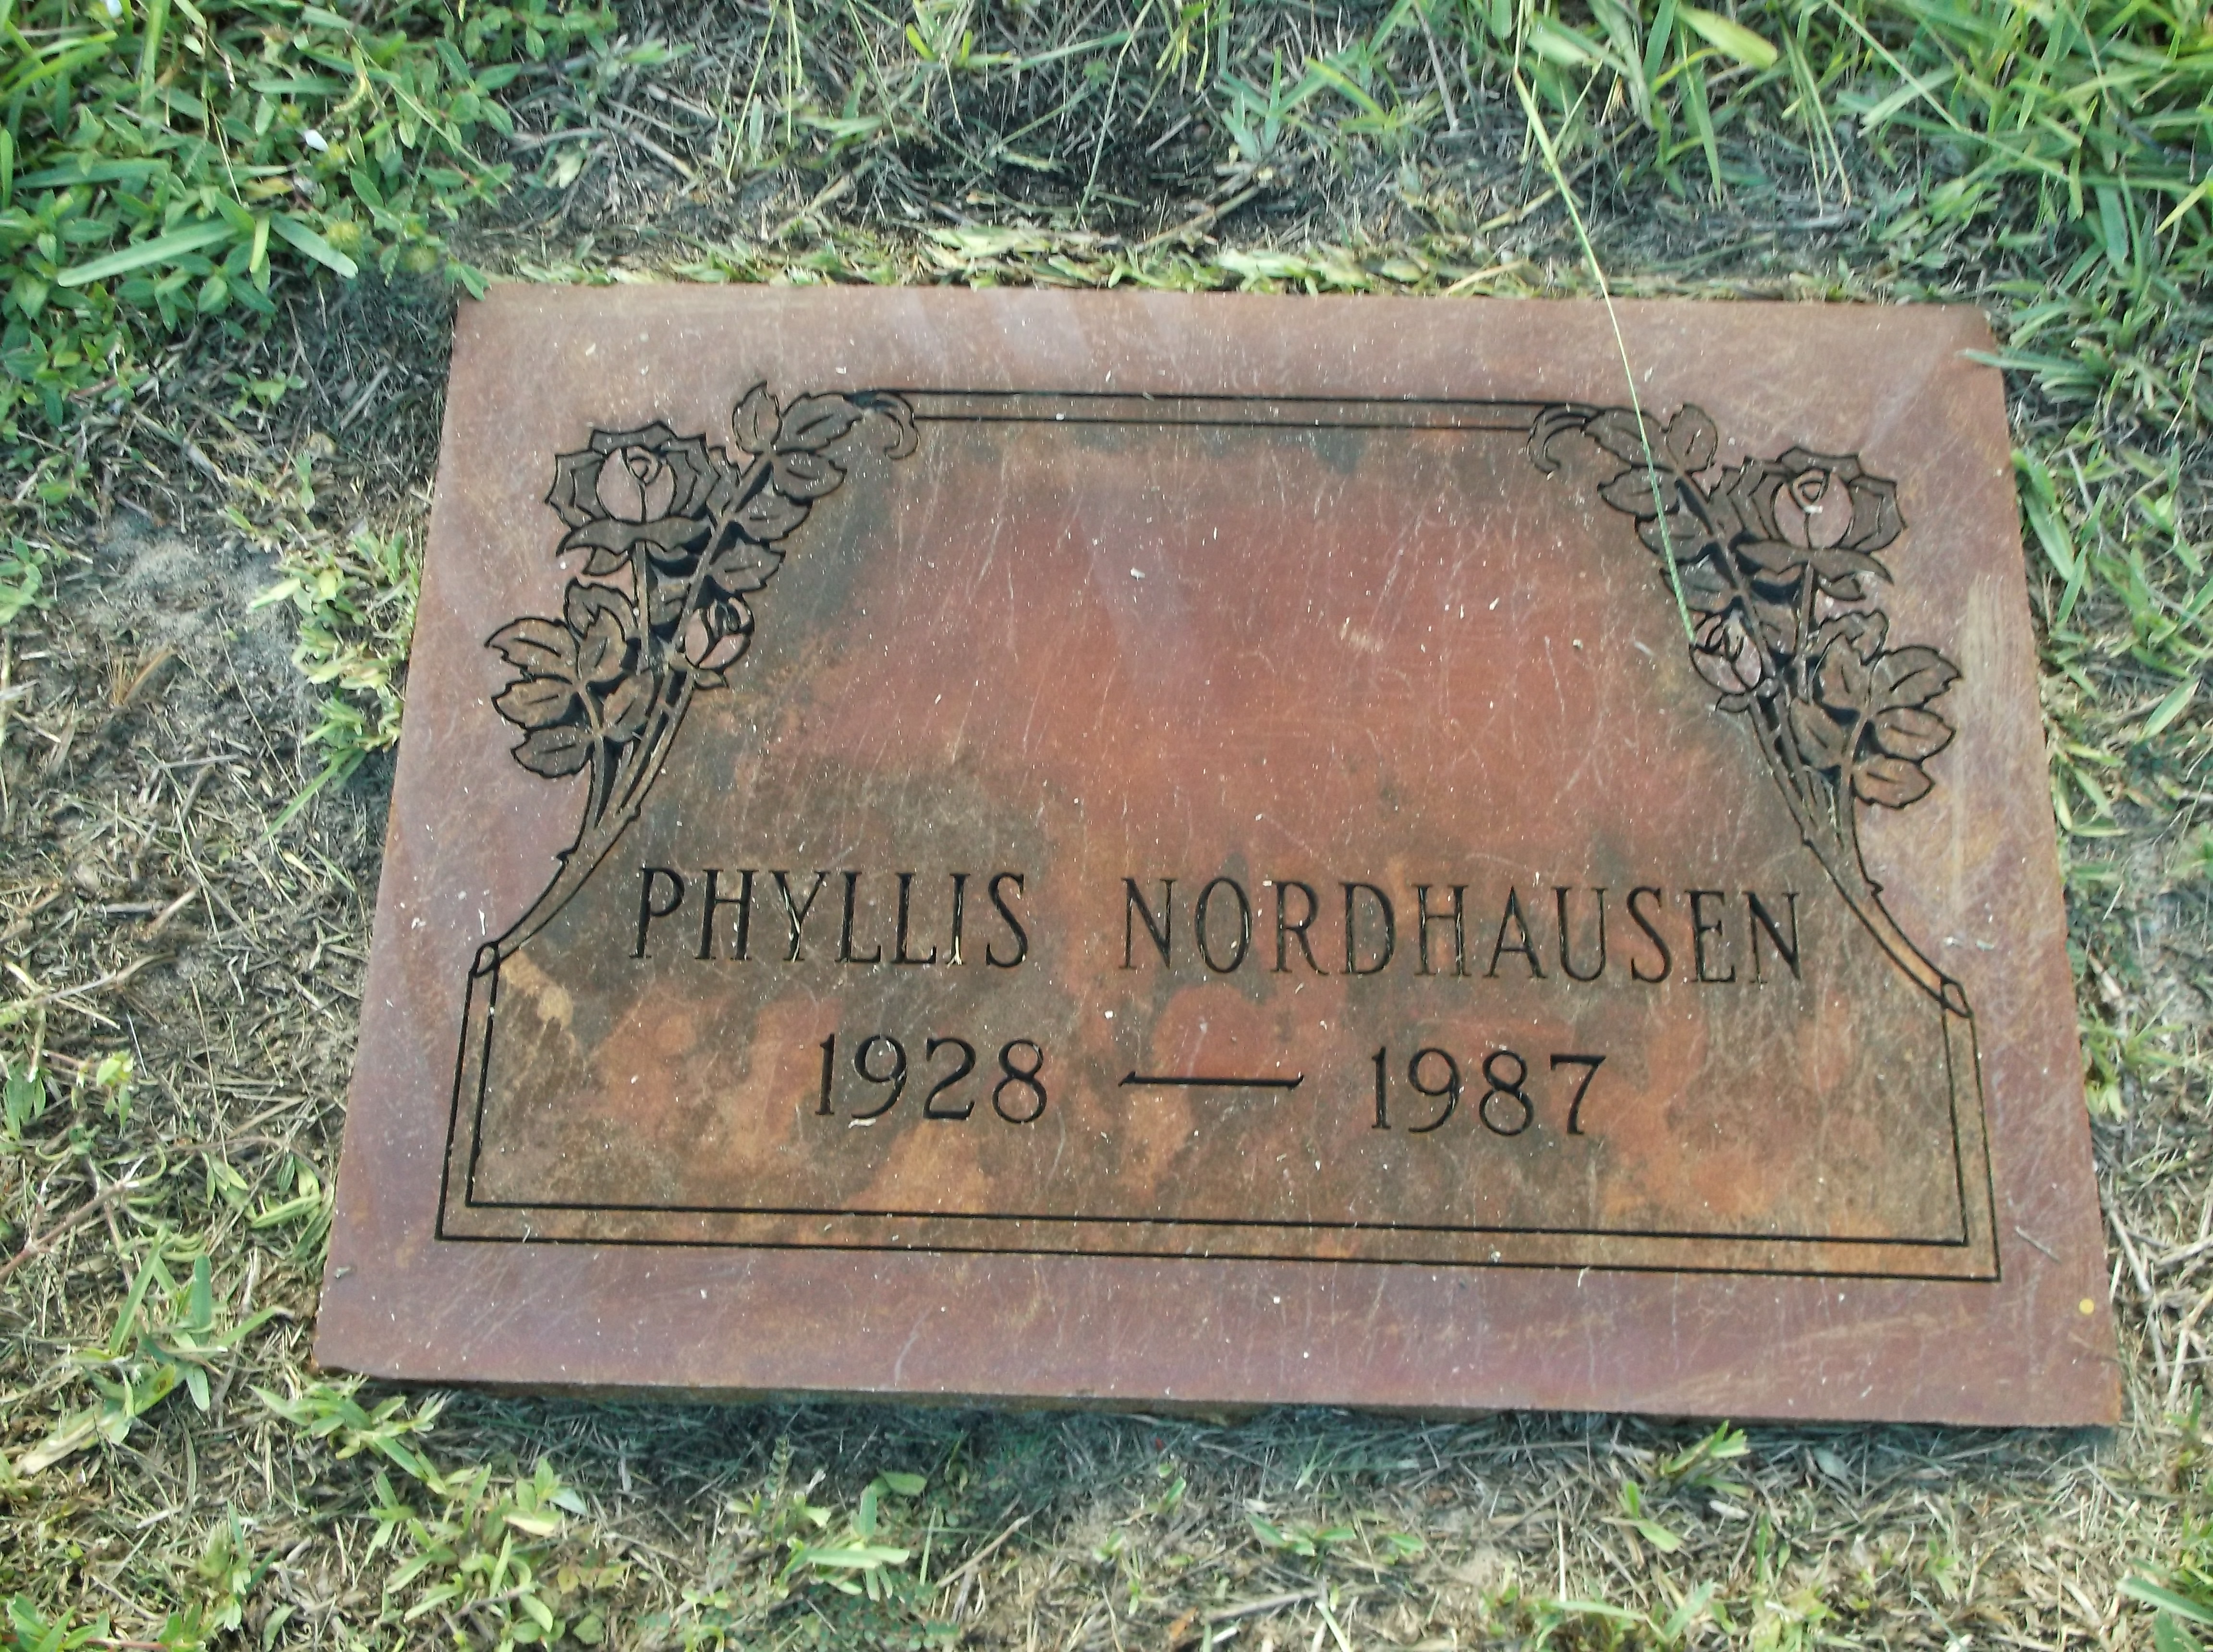 Phyllis Nordhausen